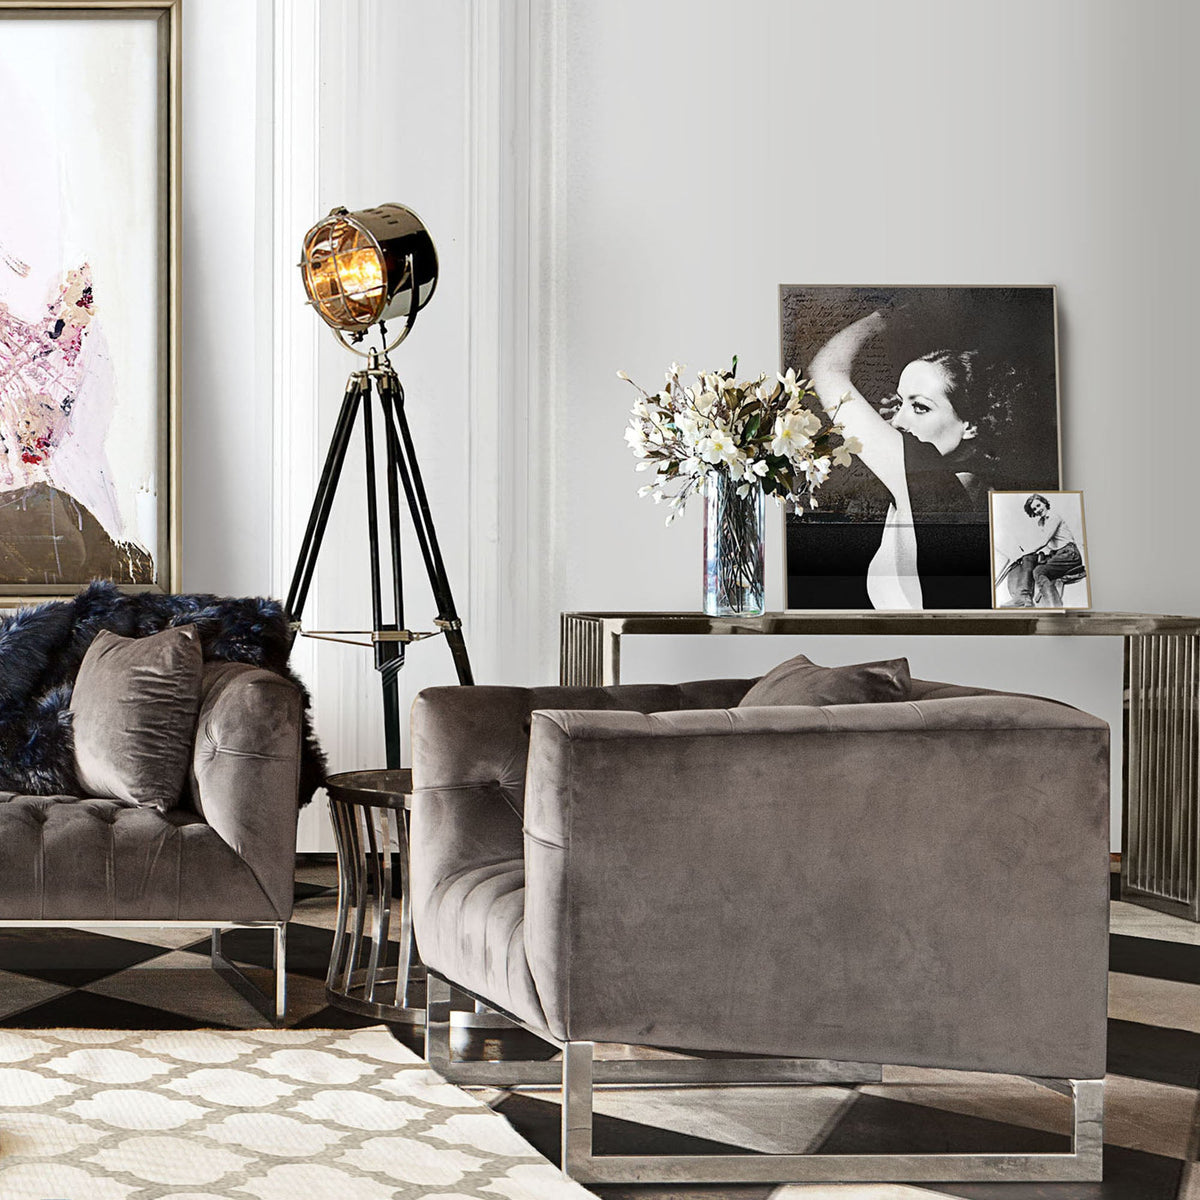 Evangeline Dusk Grey Tufted Velvet Chair - Luxury Living Collection